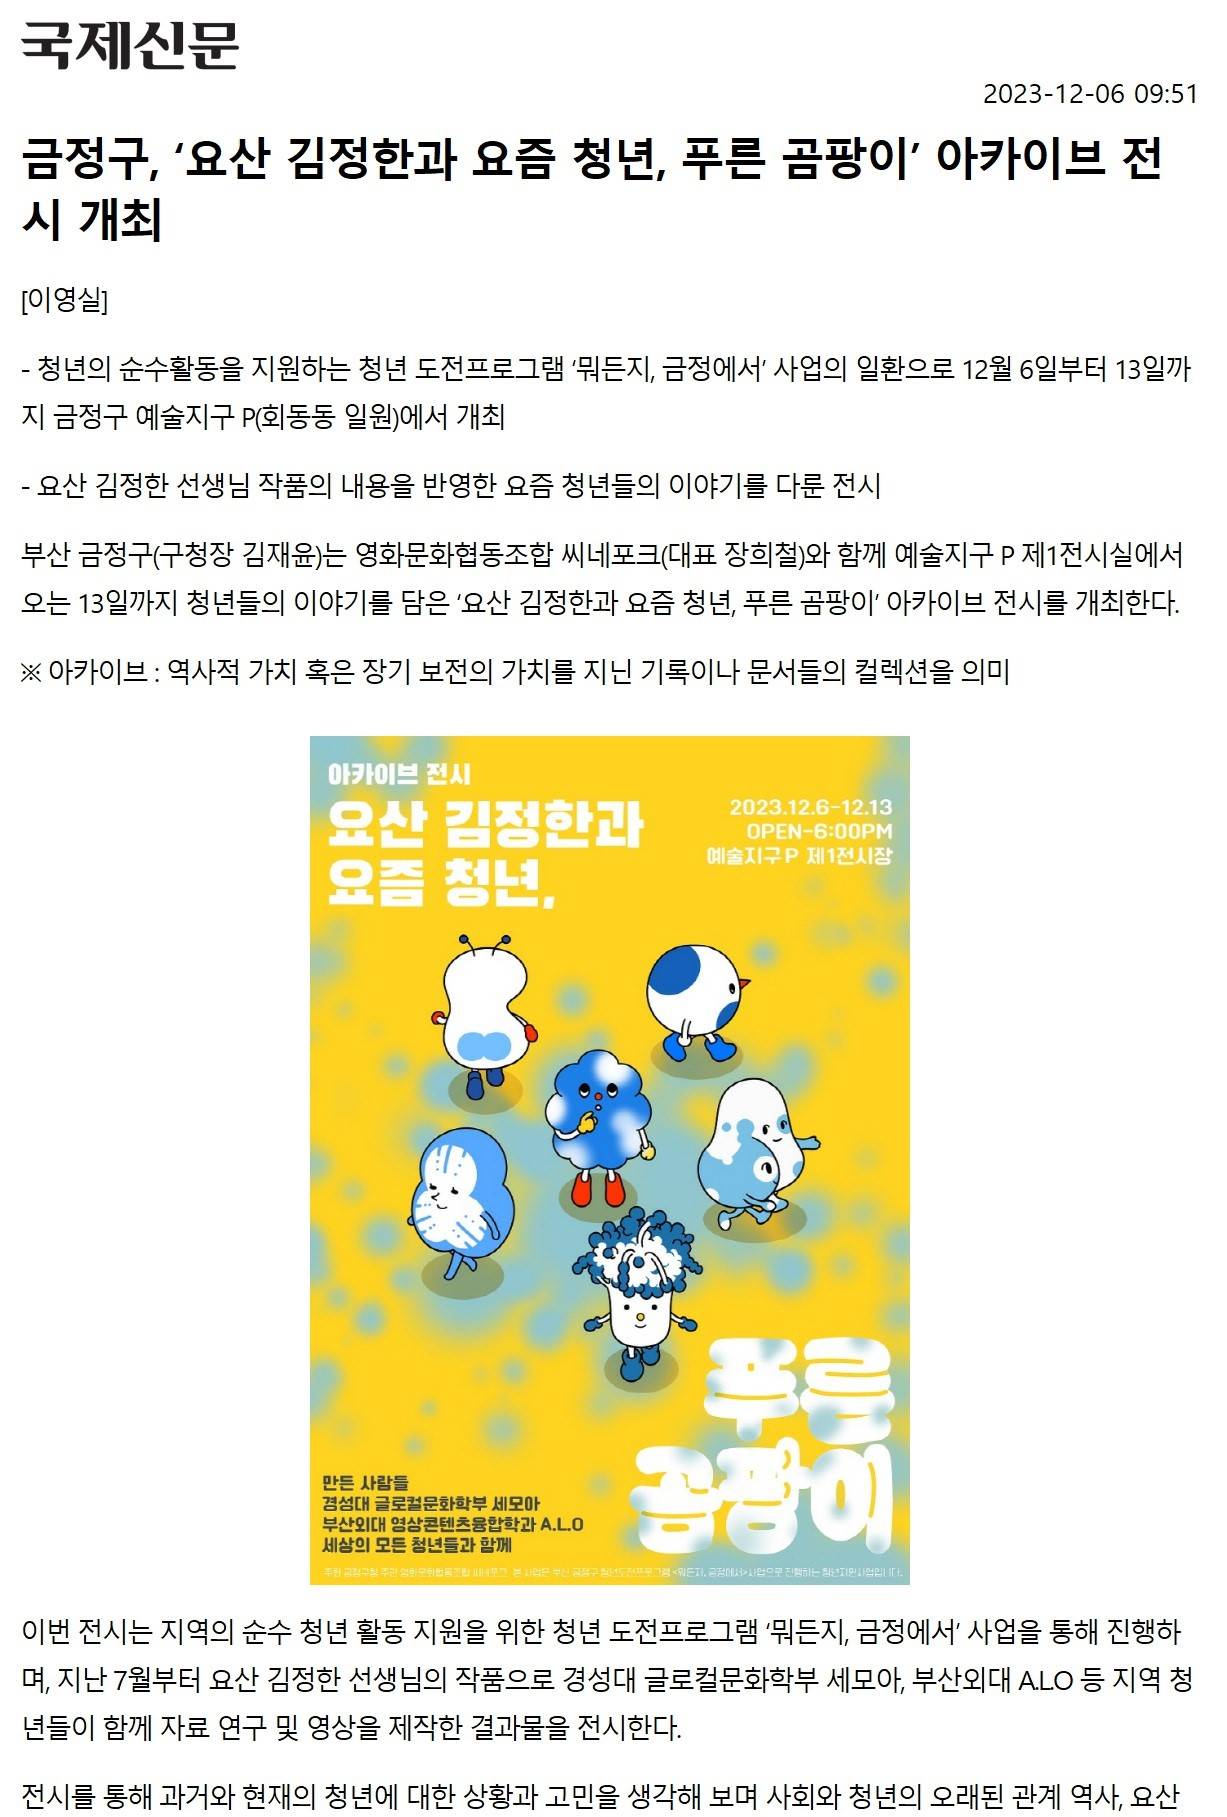 금정구,요산김정한과요즘청년,푸른곰팡이아카이브전시개최.jpg